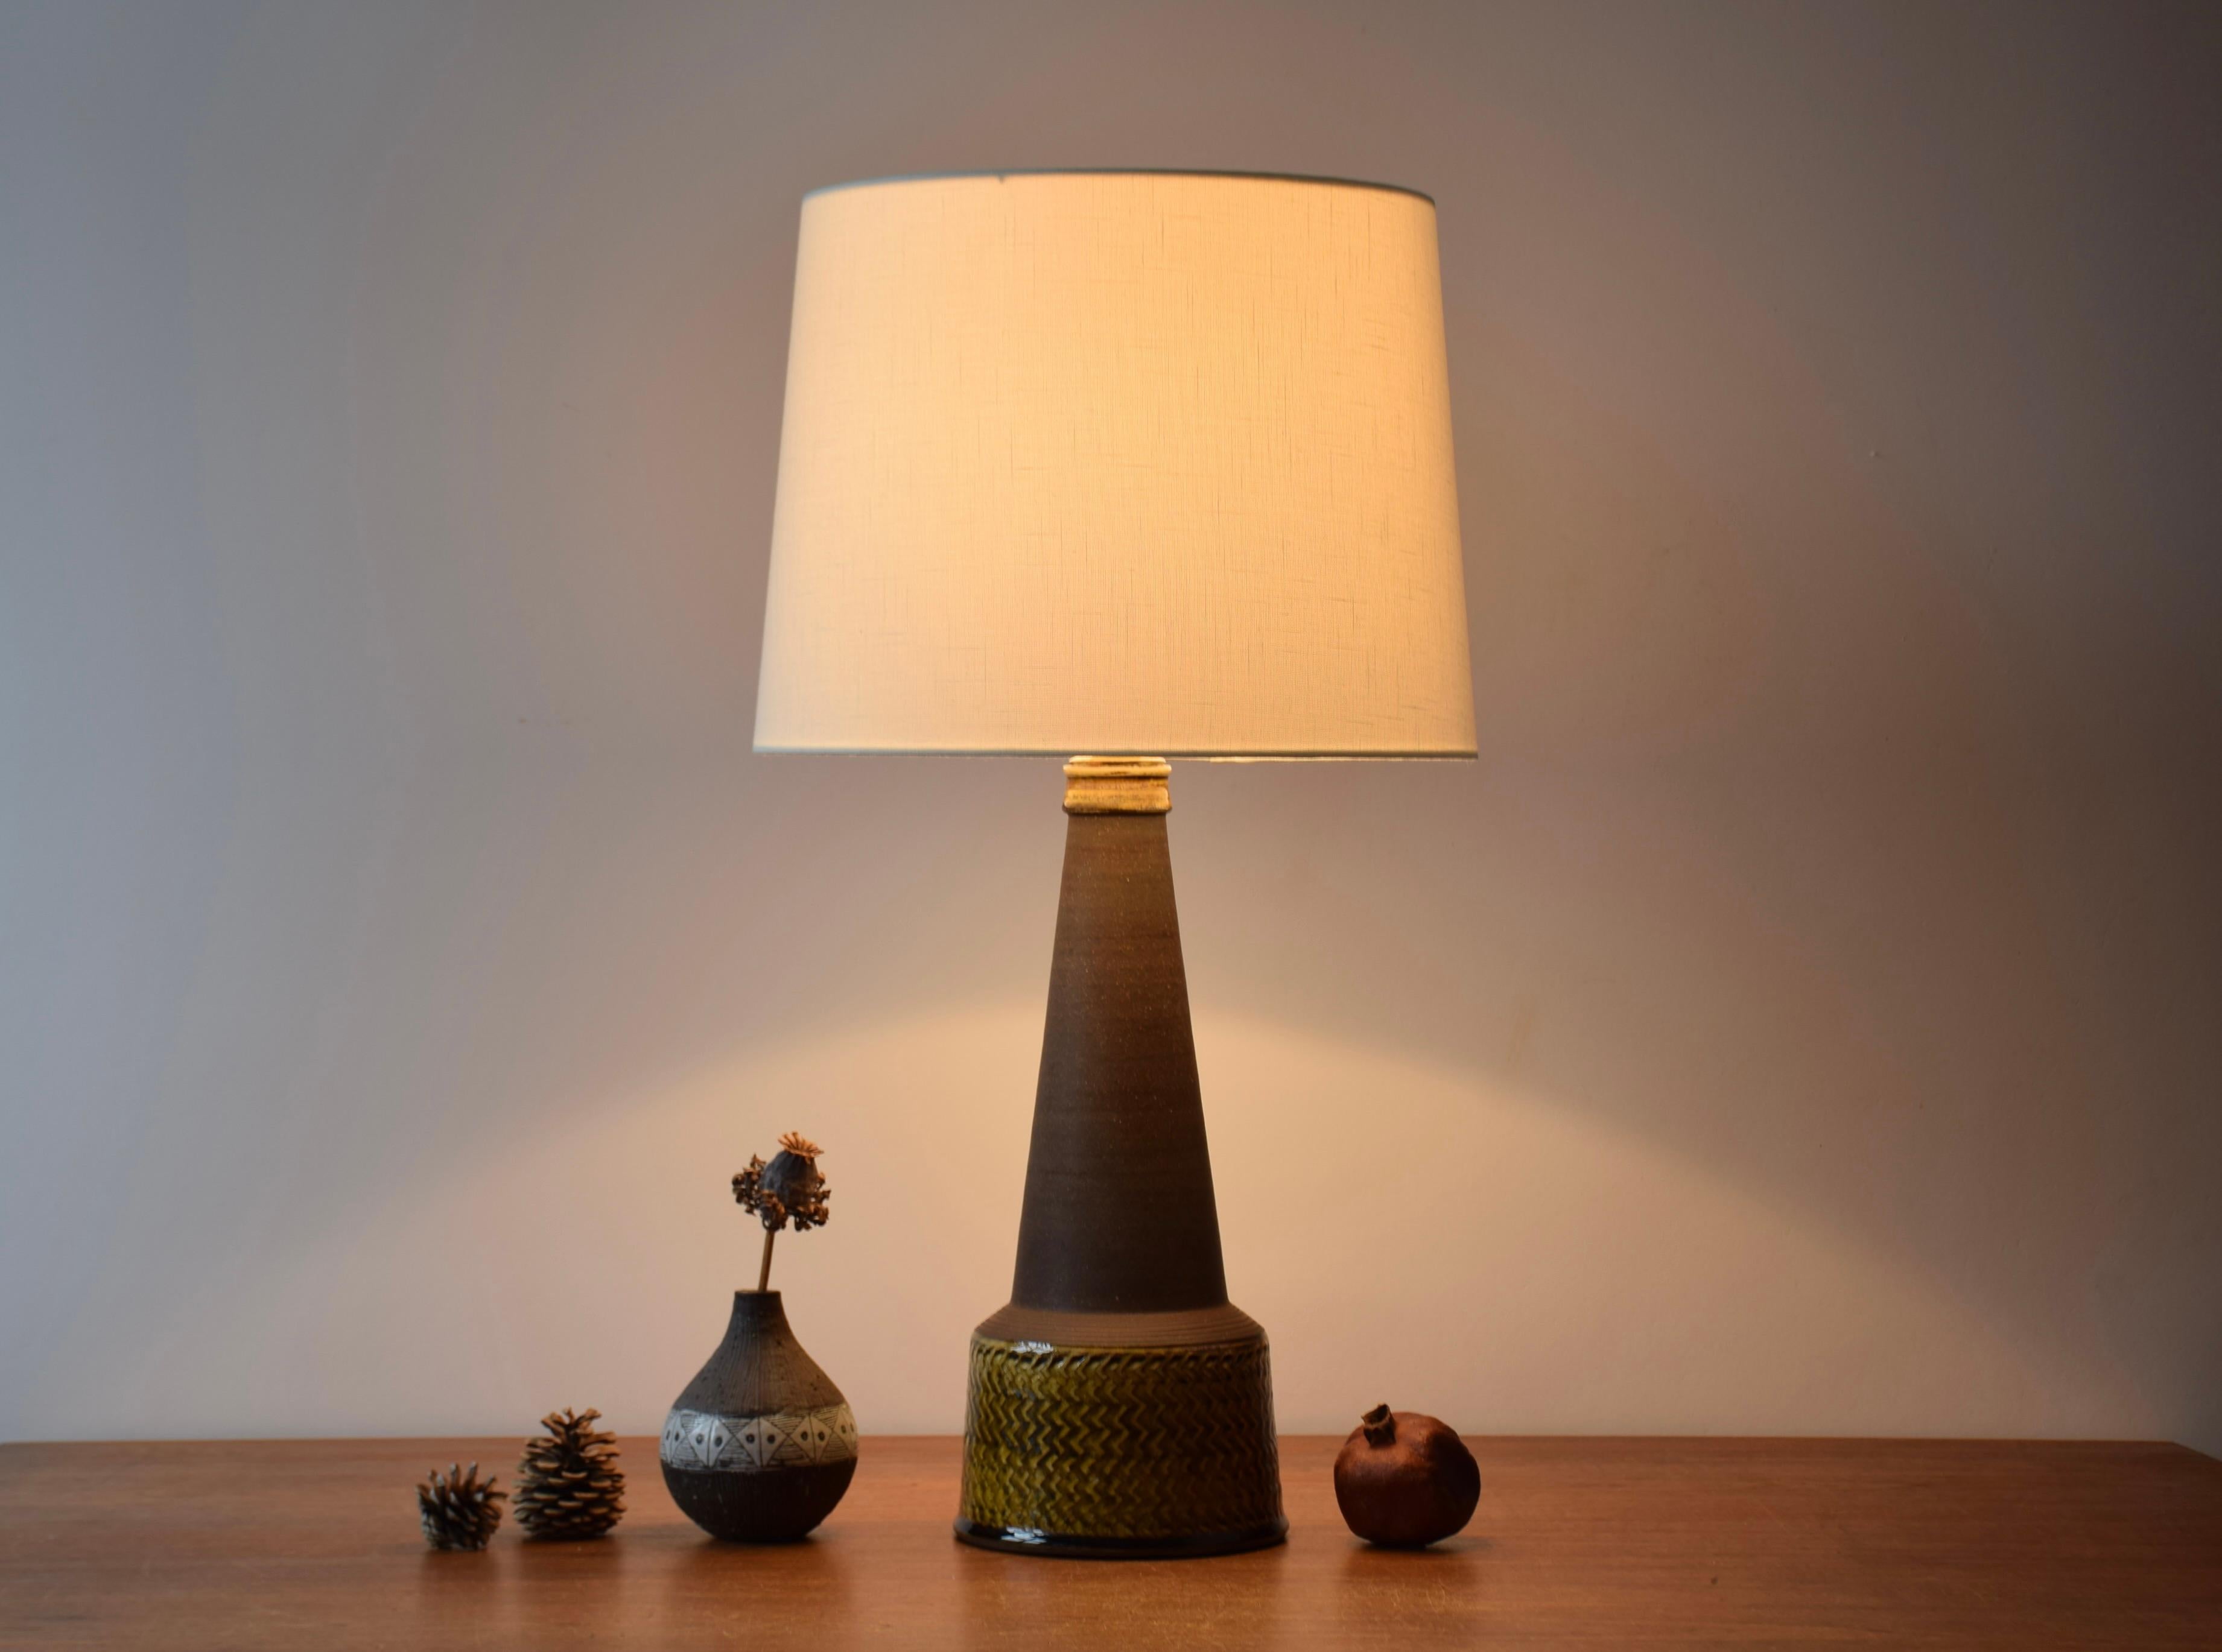 Grande lampe de table de Nils Kähler provenant de l'atelier de céramique de Herman August Kähler au Danemark. Fabriqué vers les années 1960. 

La base de la lampe présente un motif incisé et la glaçure brillante est de couleur ambre/curry. Le cou et